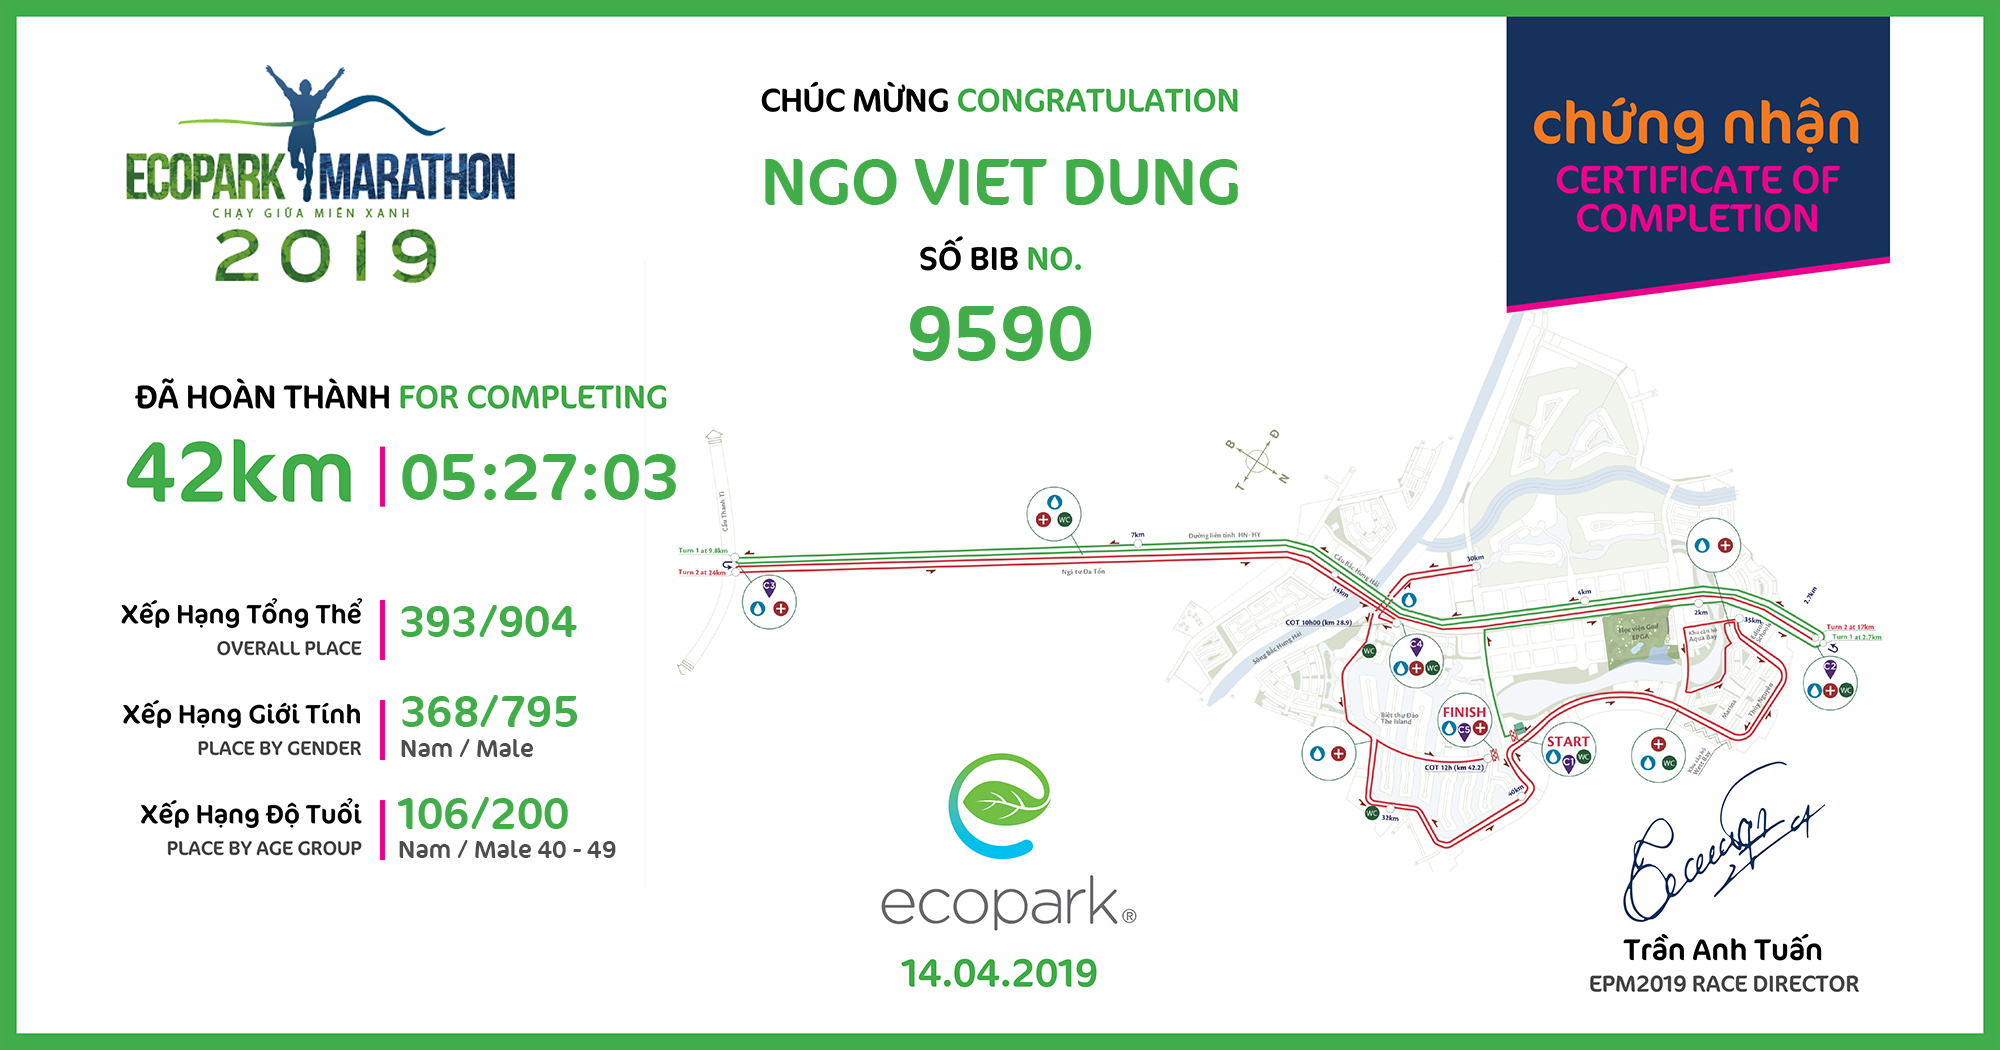 9590 - Ngo Viet Dung